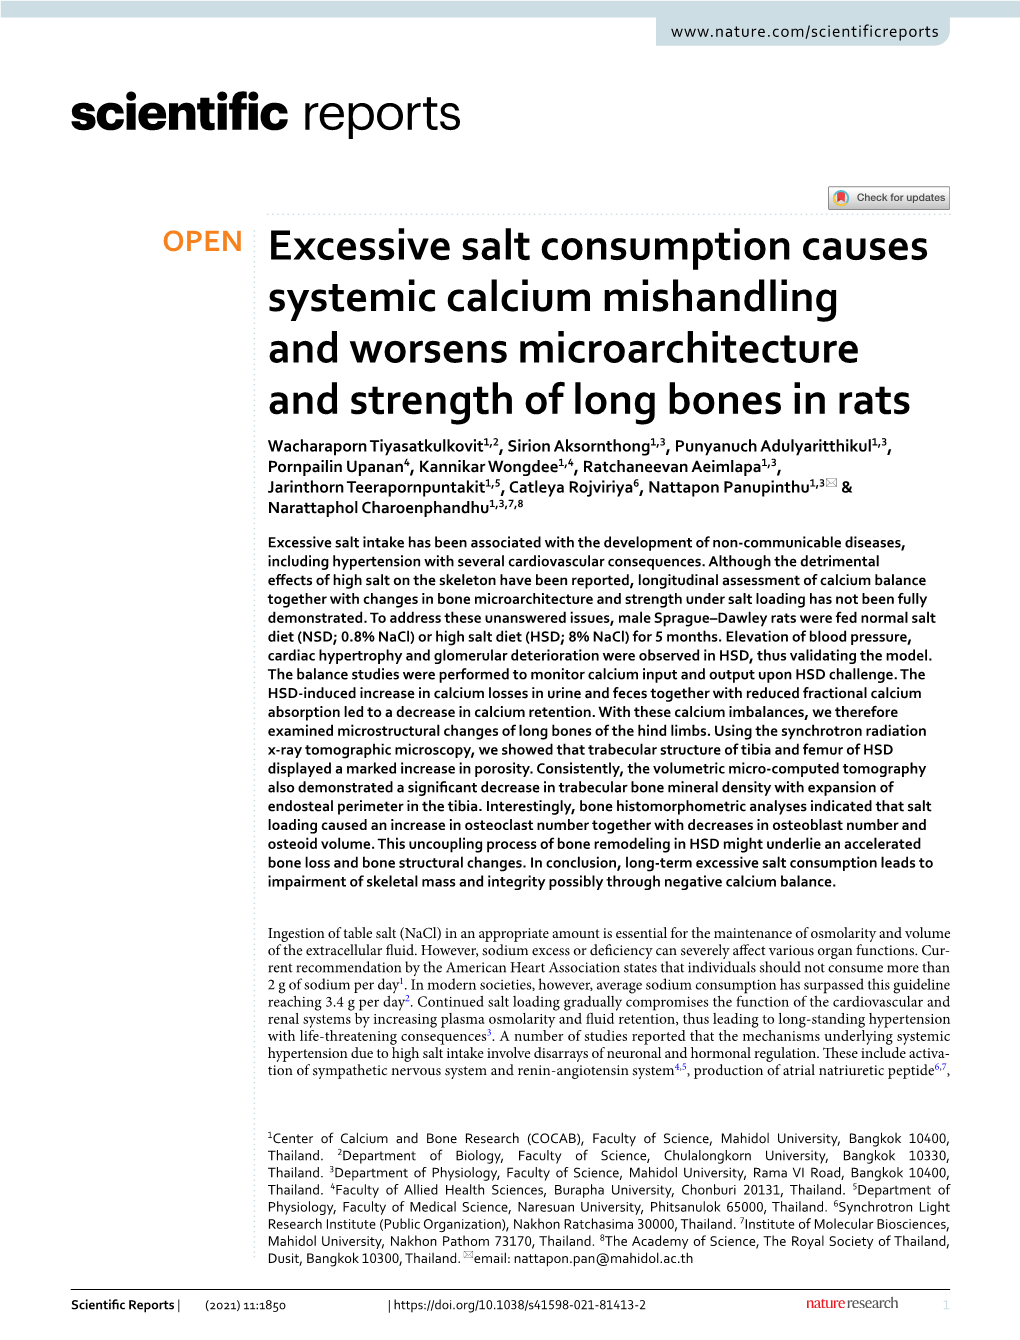 Excessive Salt Consumption Causes Systemic Calcium Mishandling And